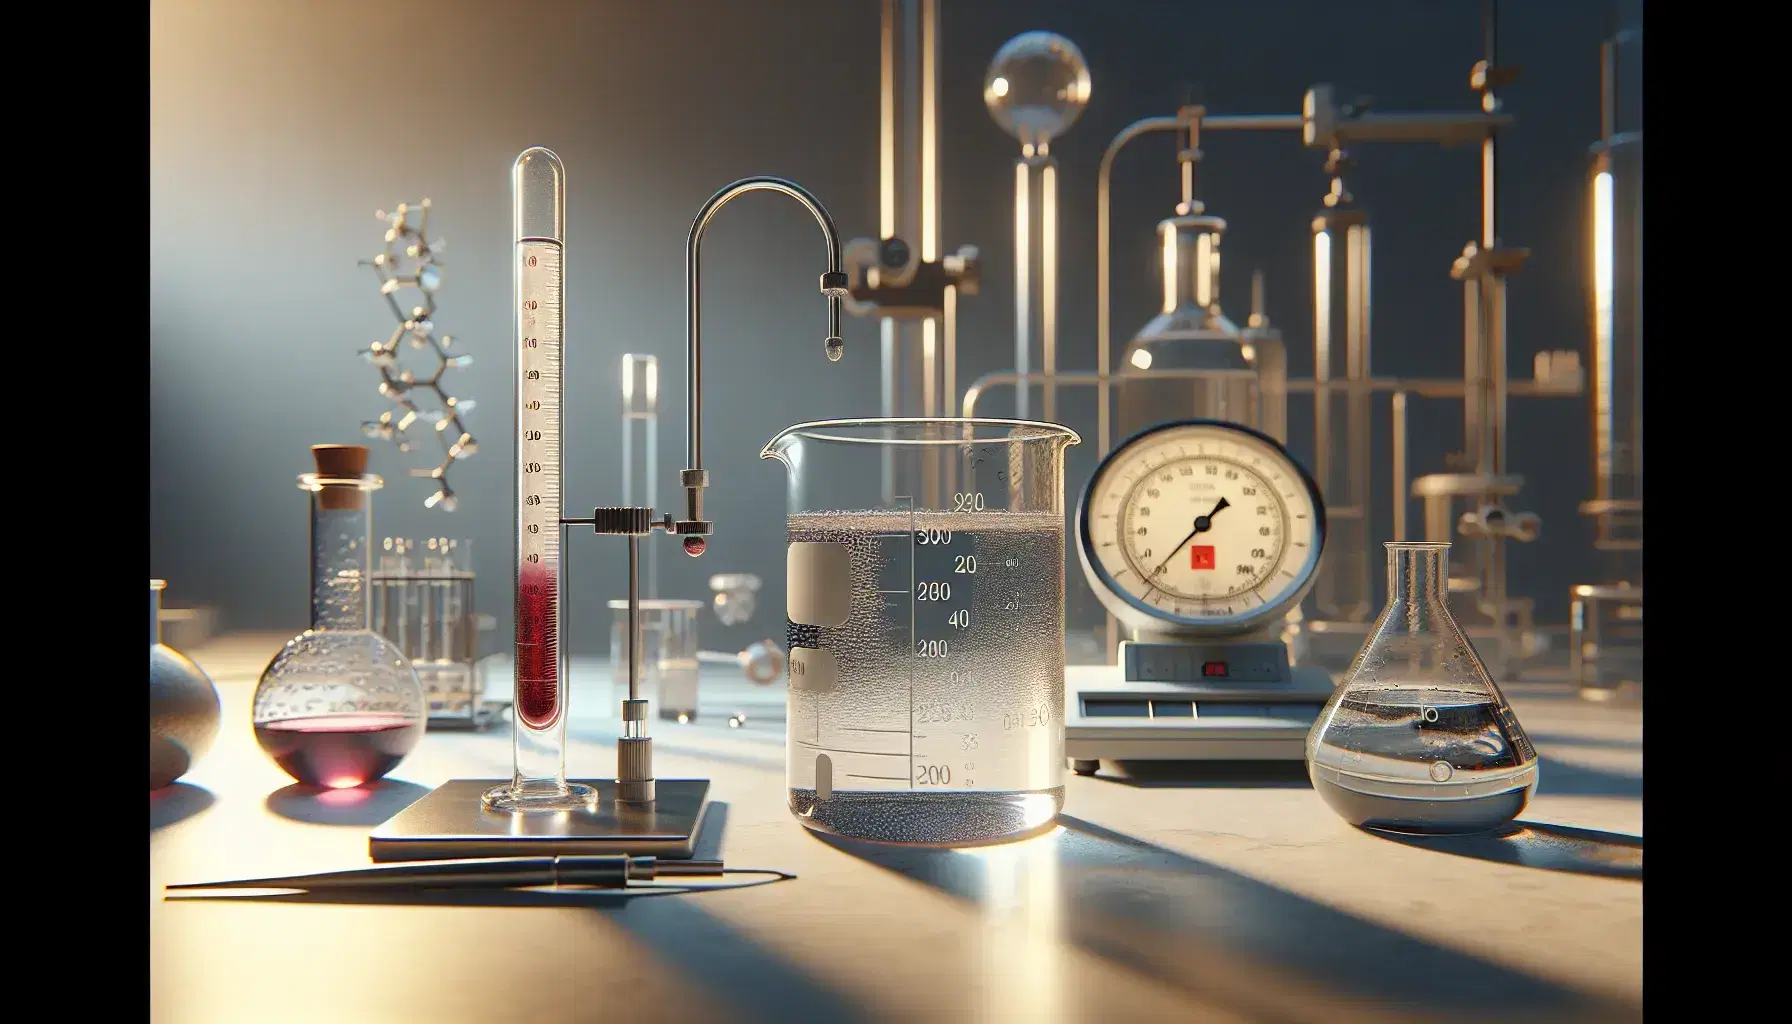 Laboratorio científico con elementos para el estudio de fluidos, incluyendo un vaso de precipitados con líquido, termómetro de vidrio, cilindro graduado y manómetro en U.